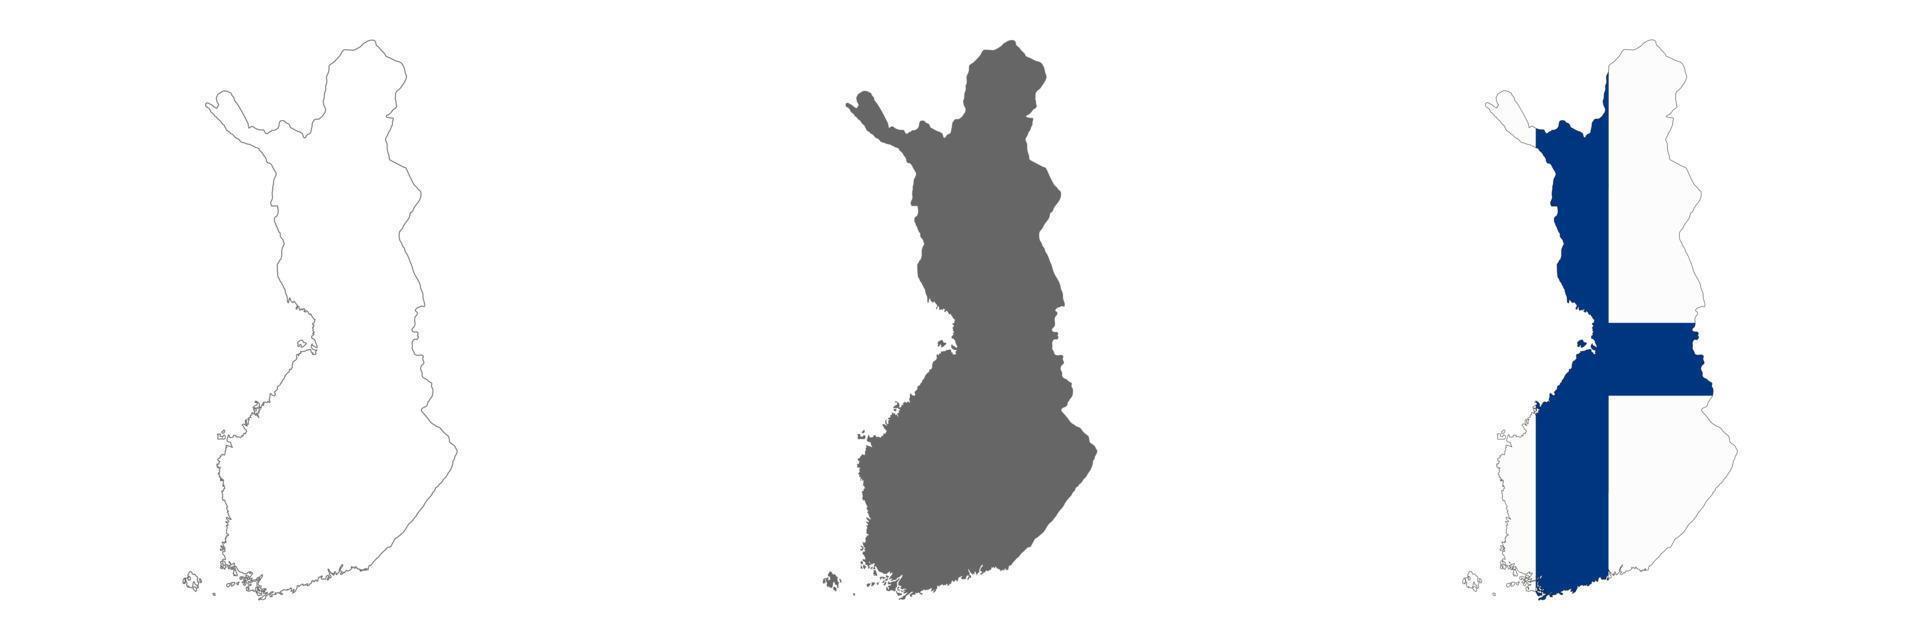 mycket detaljerad finlandskarta med gränser isolerade på bakgrunden vektor